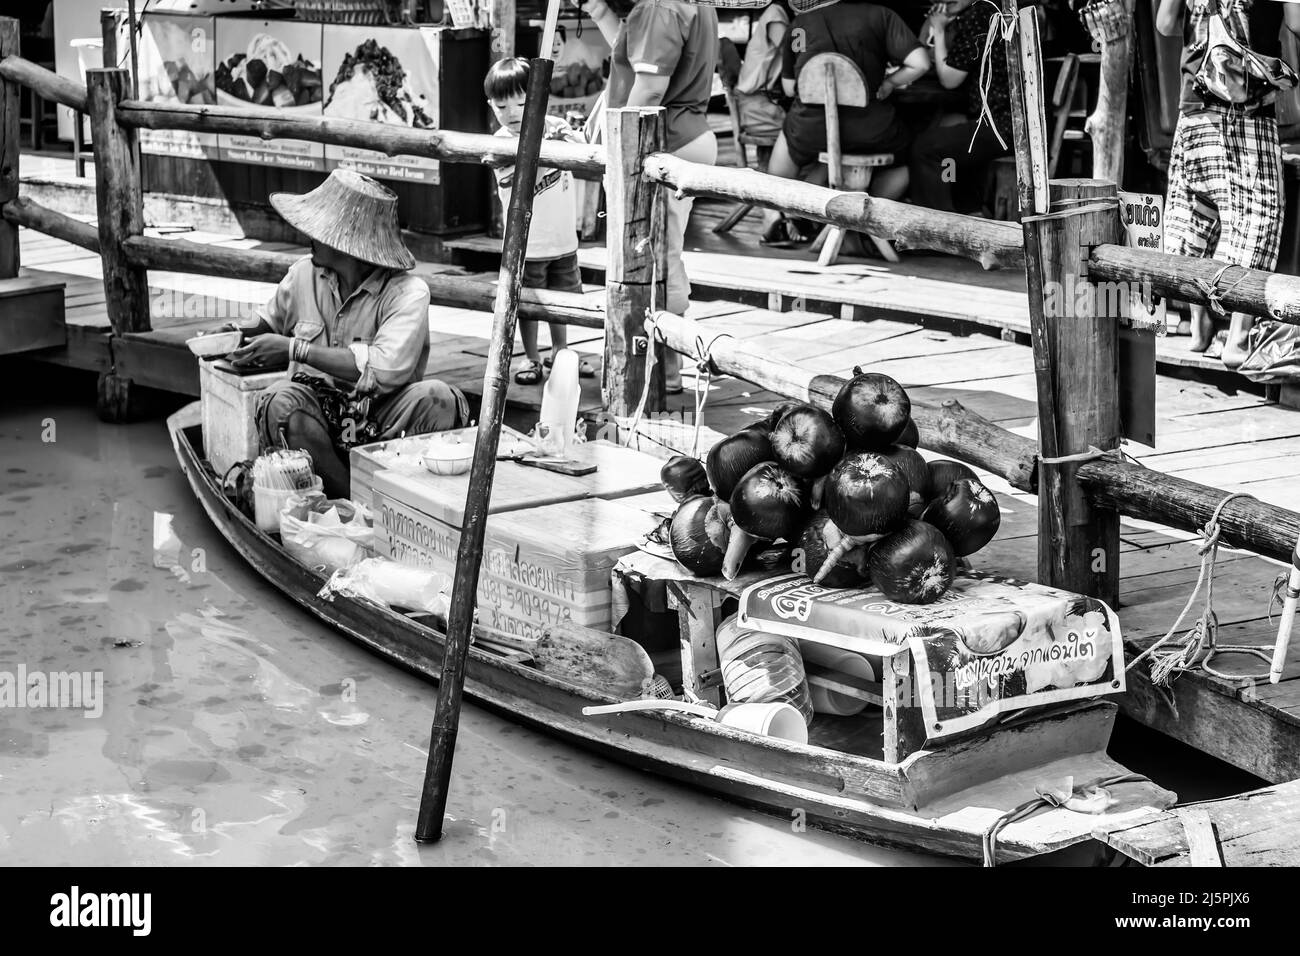 Pattaya, Thaïlande - 6 décembre 2009: Vendeur en bateau au marché flottant de Pattaya vendant du lait de coco. Photographie en noir et blanc Banque D'Images